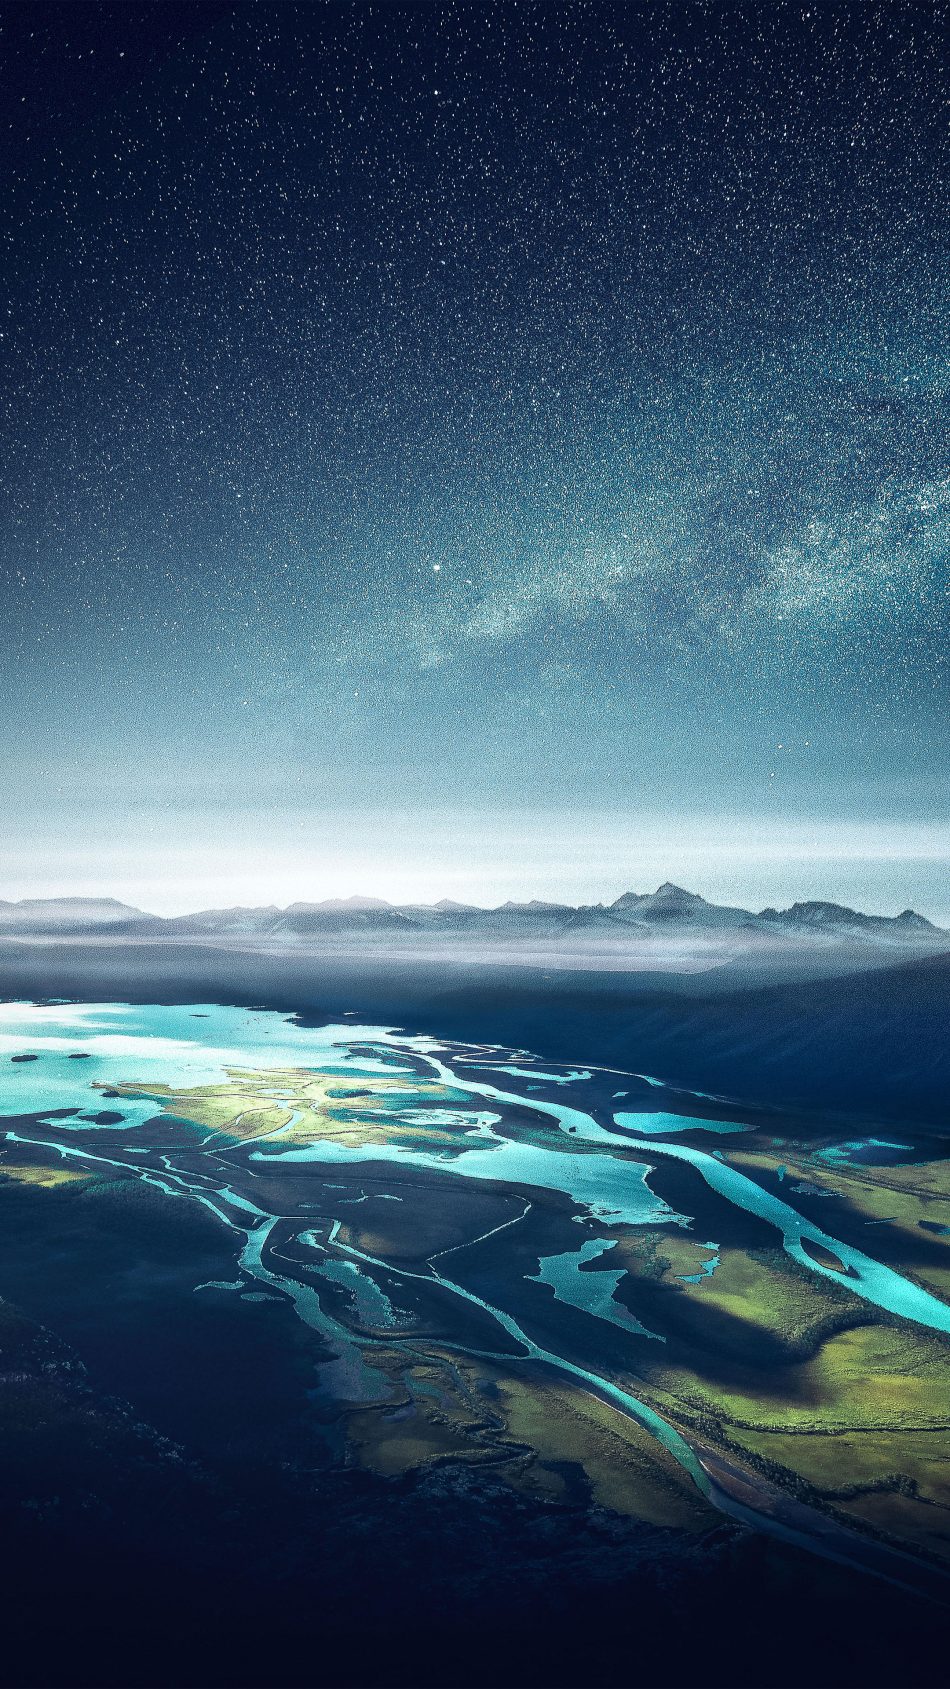 Mountain Range River Landscape Starry Sky 4K Ultra HD ...